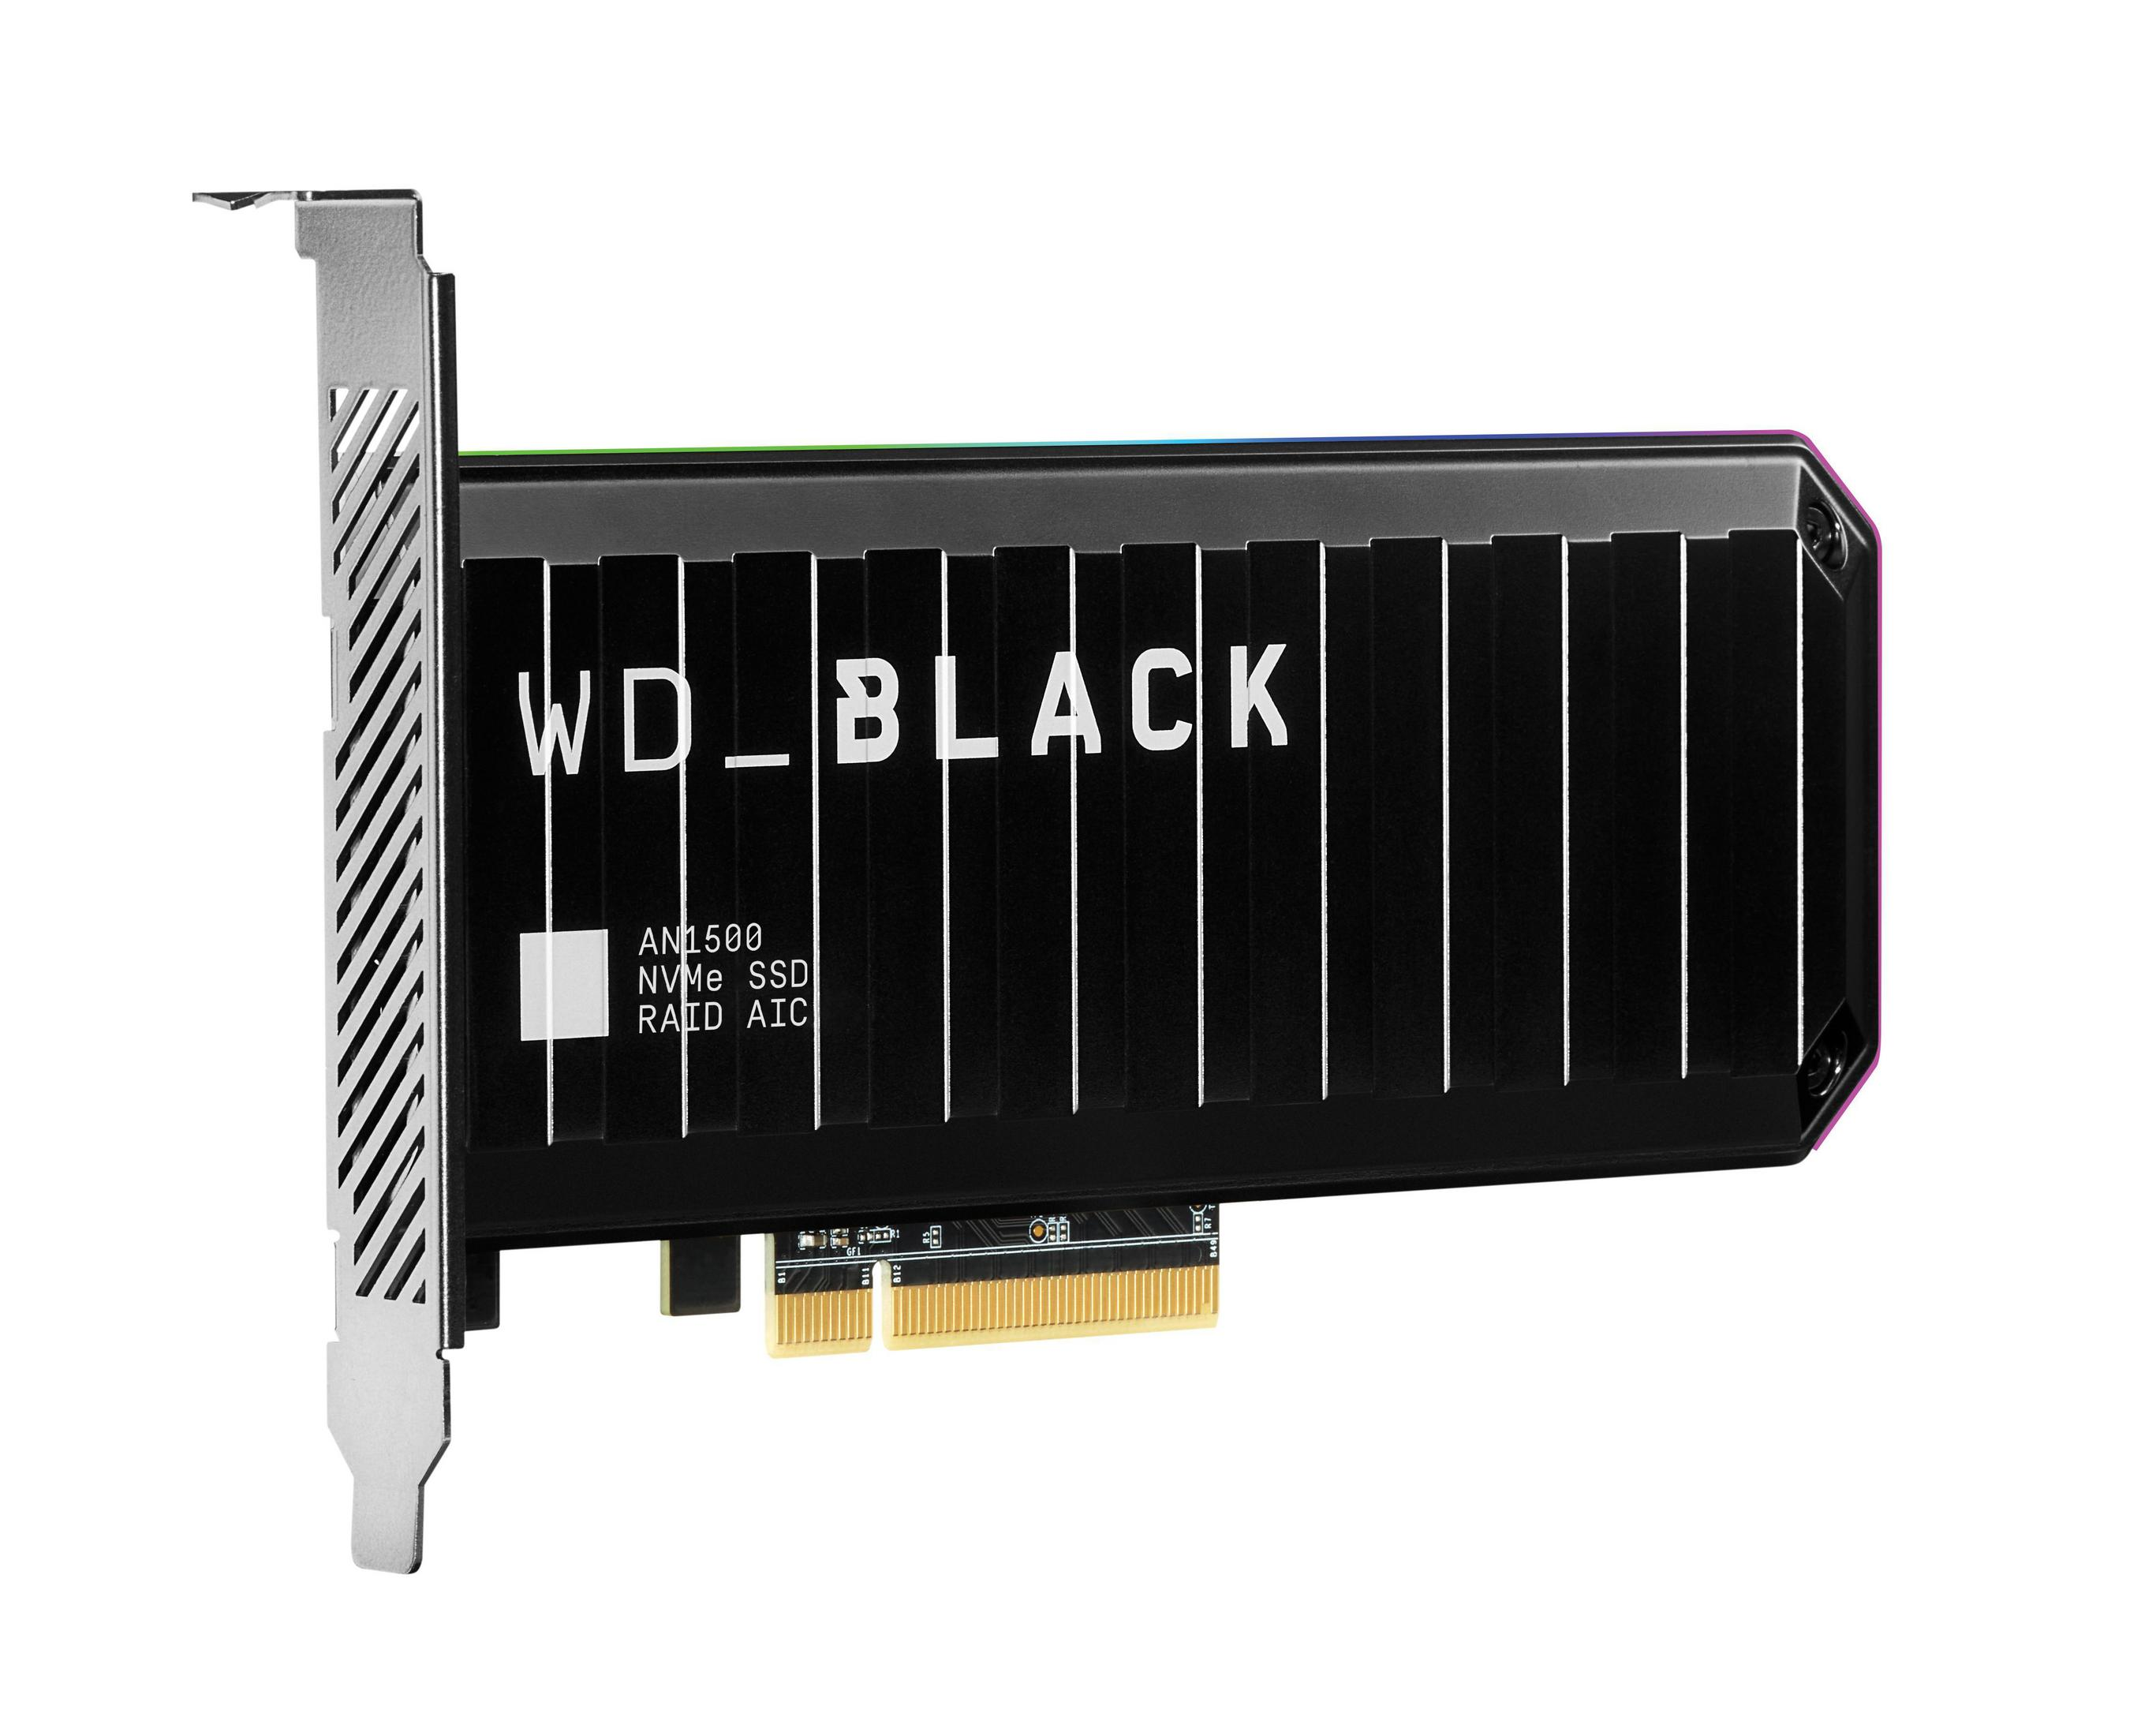 WD WDS200T1X0L WD AN1500 TB, BLACK intern SSD, PCIE 2TB, 2